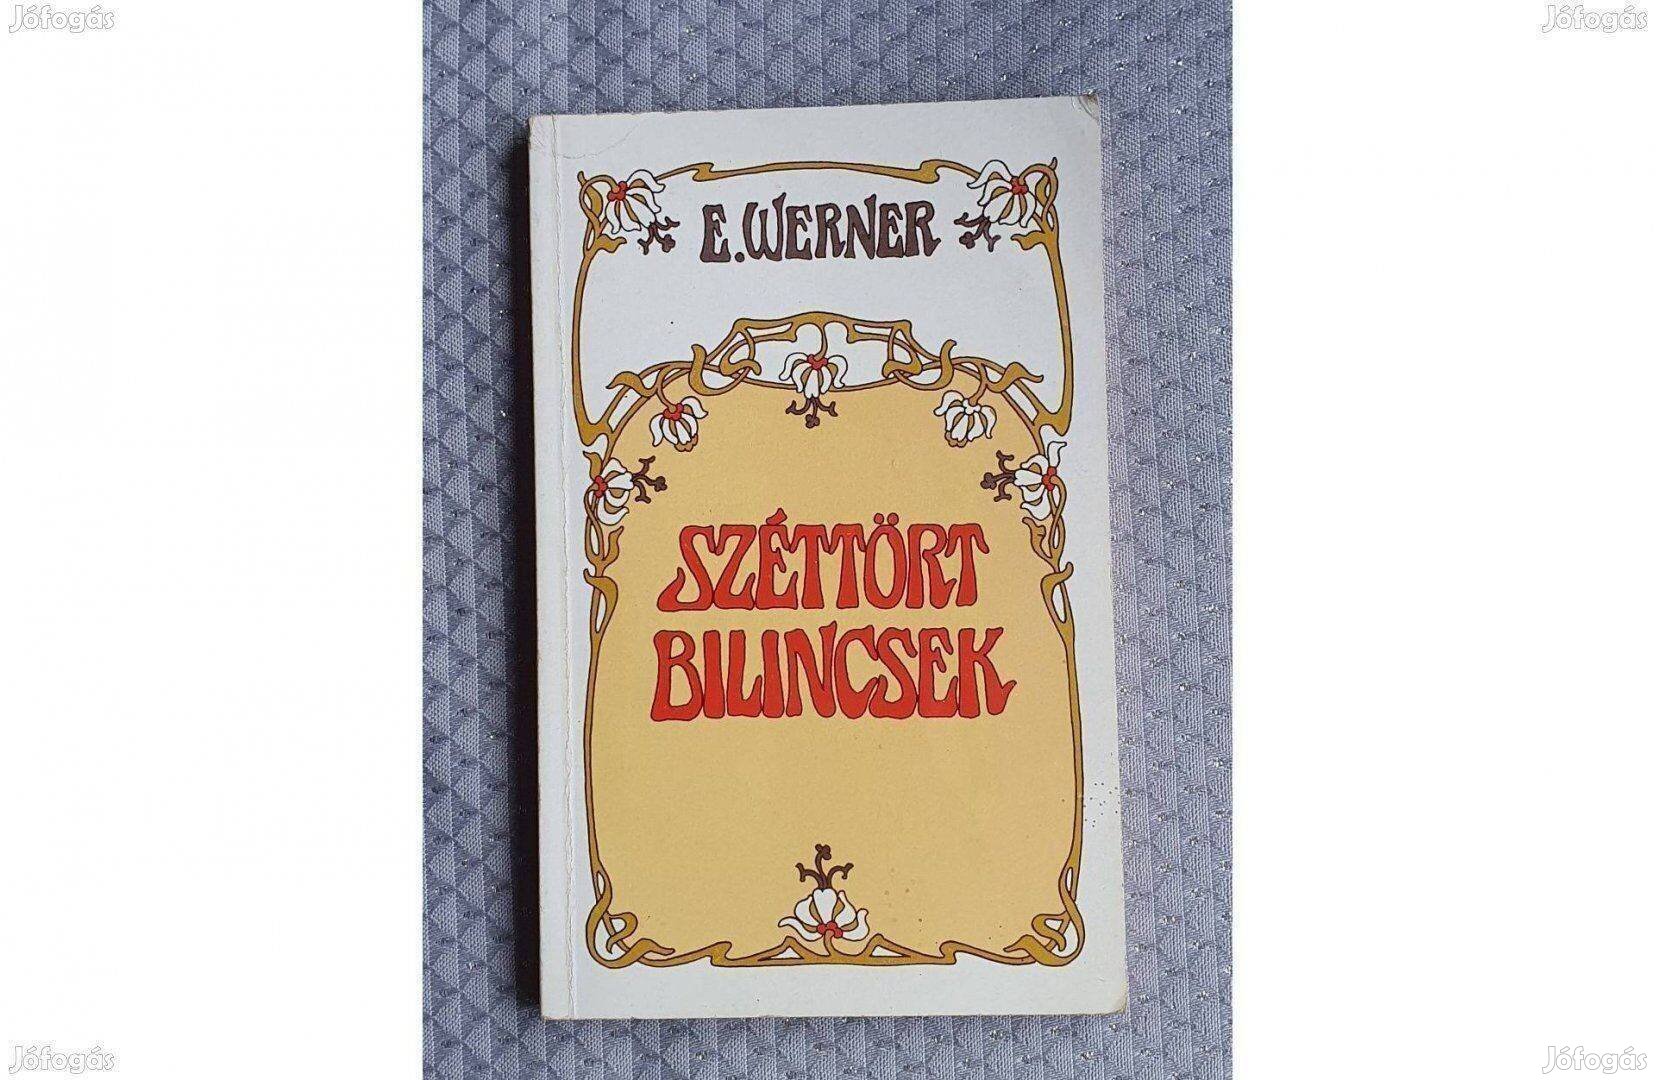 E. Werner: Széttört bilincsek regény 1990